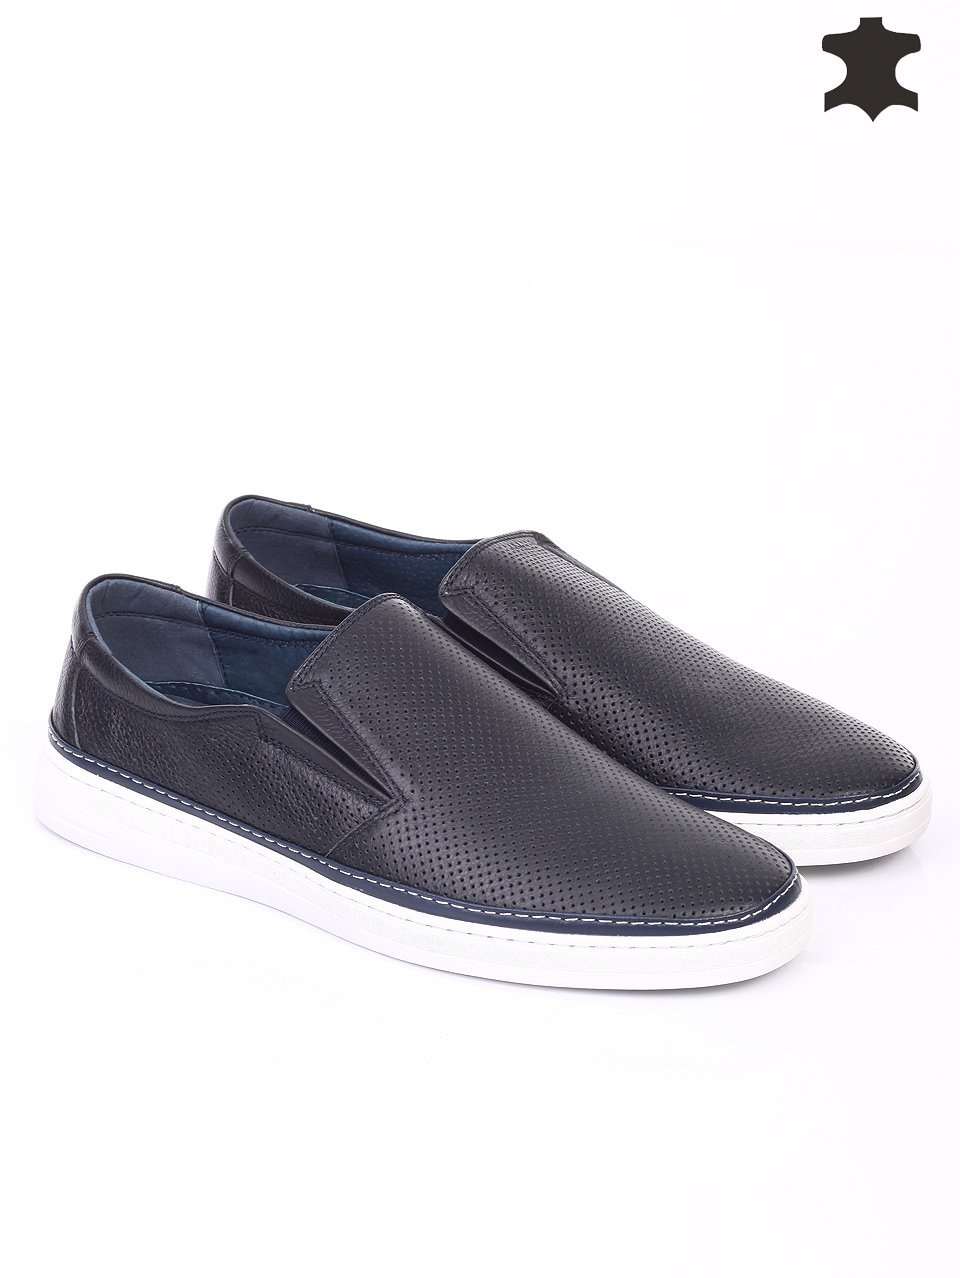 Ежедневни мъжки обувки от естествена кожа в синьо 7N-16275 navy